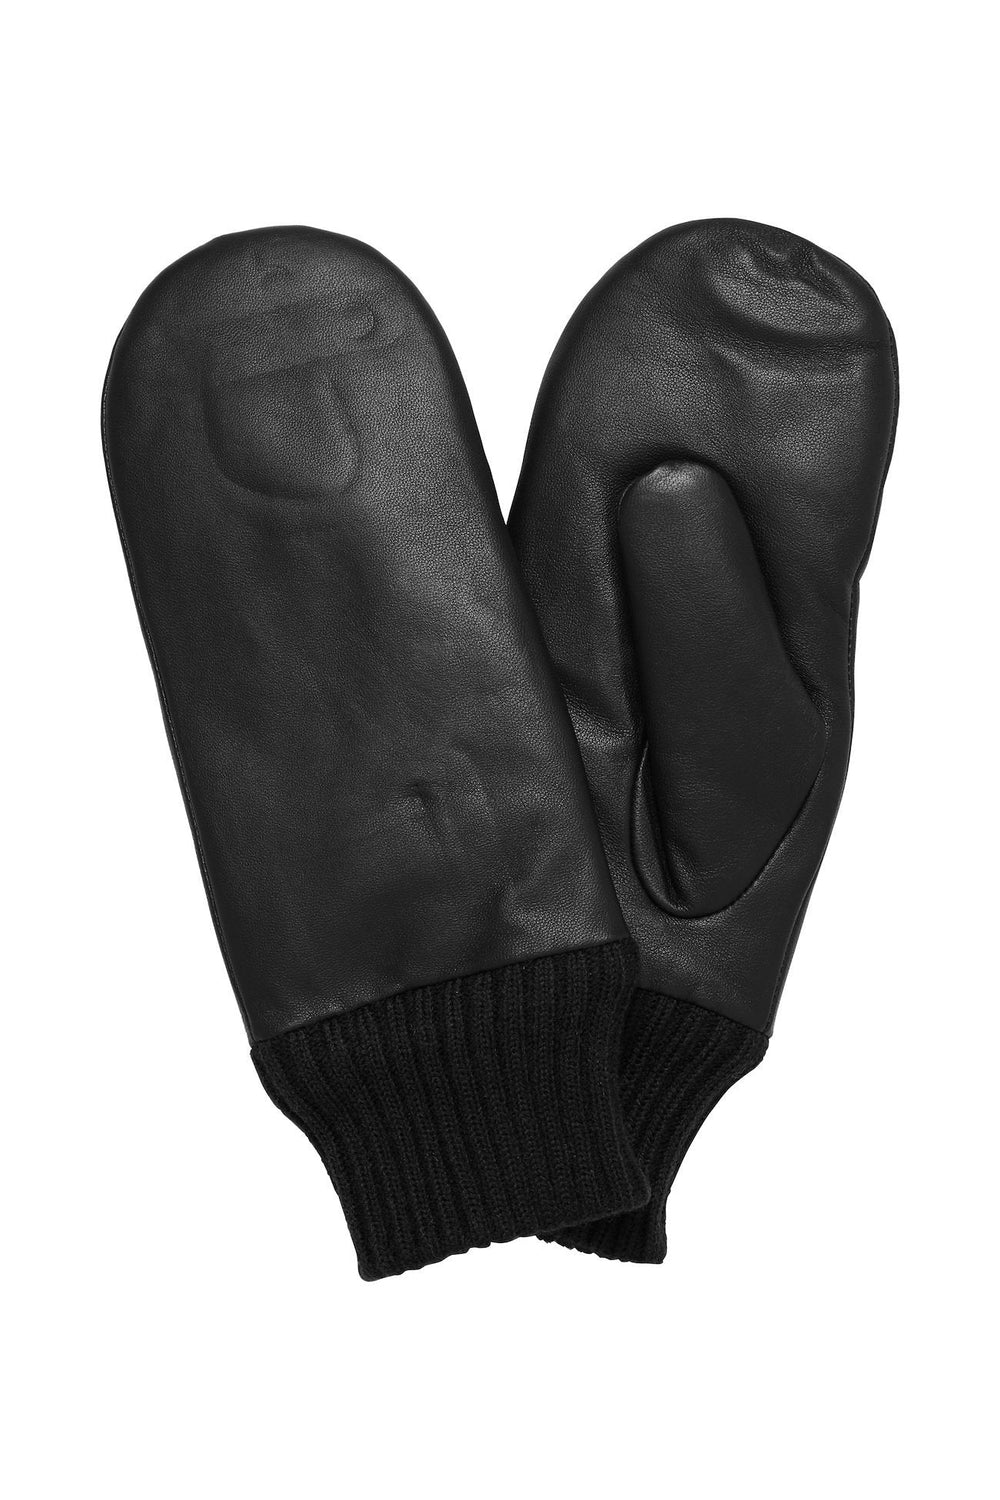 IANILLA Black Leather Gloves